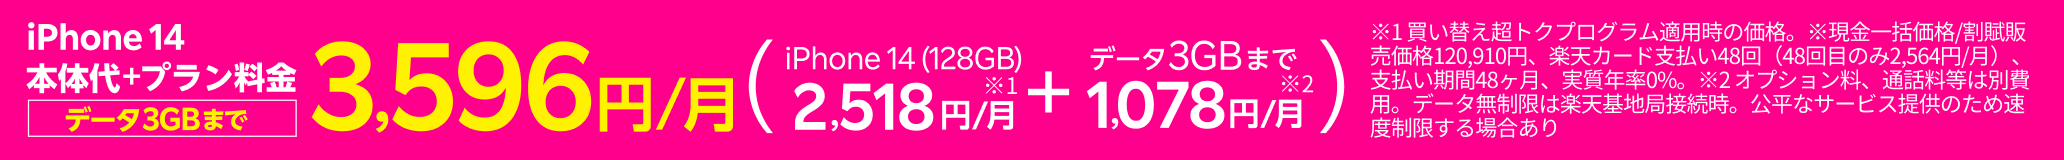 iPhone 14本体代+プラン料金(データ3GBまで)3,596円/月